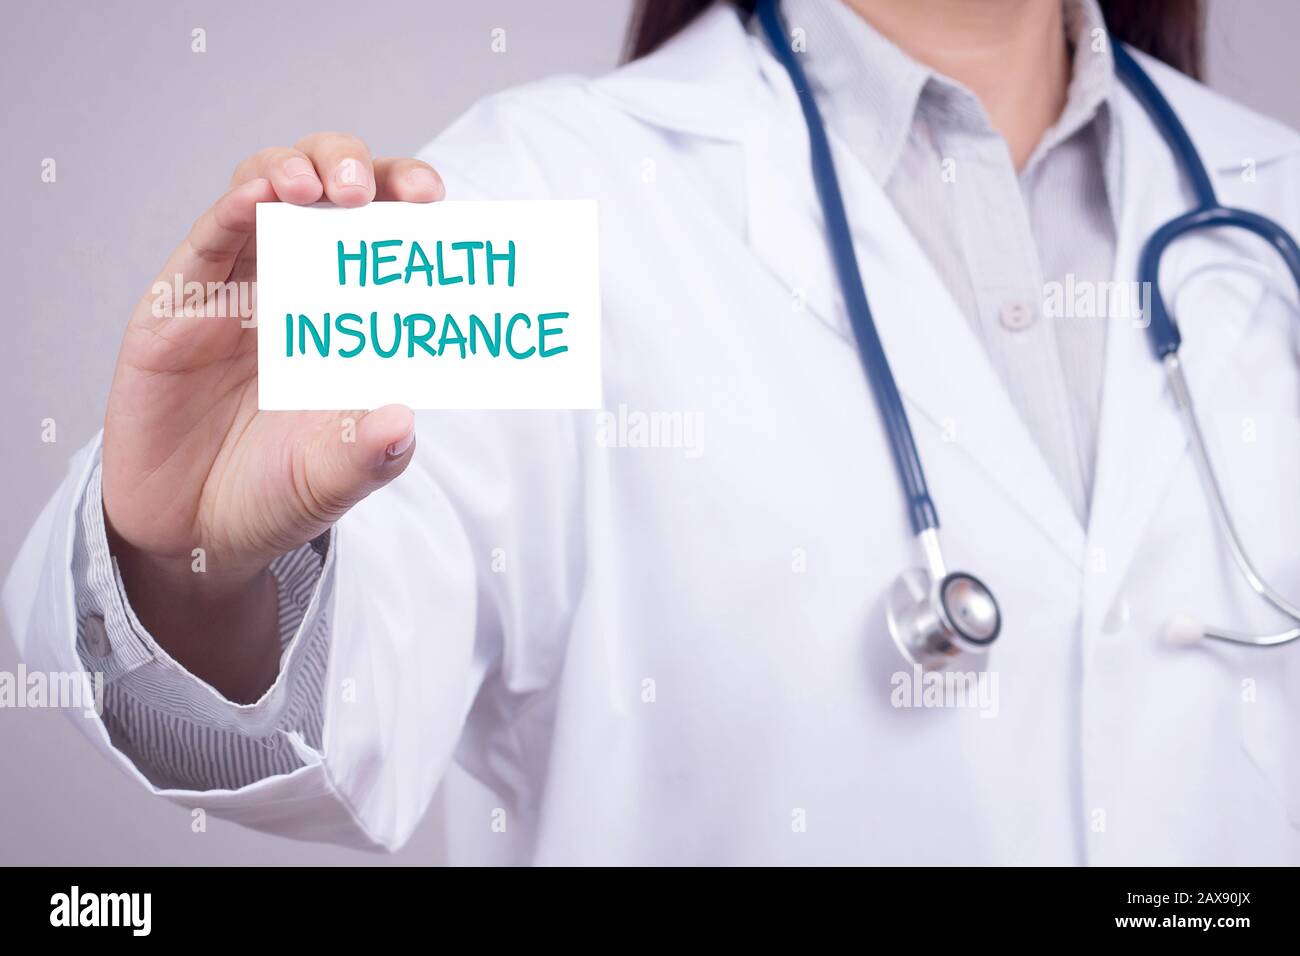 concetto di assicurazione sanitaria. medico in abbigliamento medico con stetoscopio che mostra la carta per l'assicurazione sanitaria in mano, faccia anonima Foto Stock